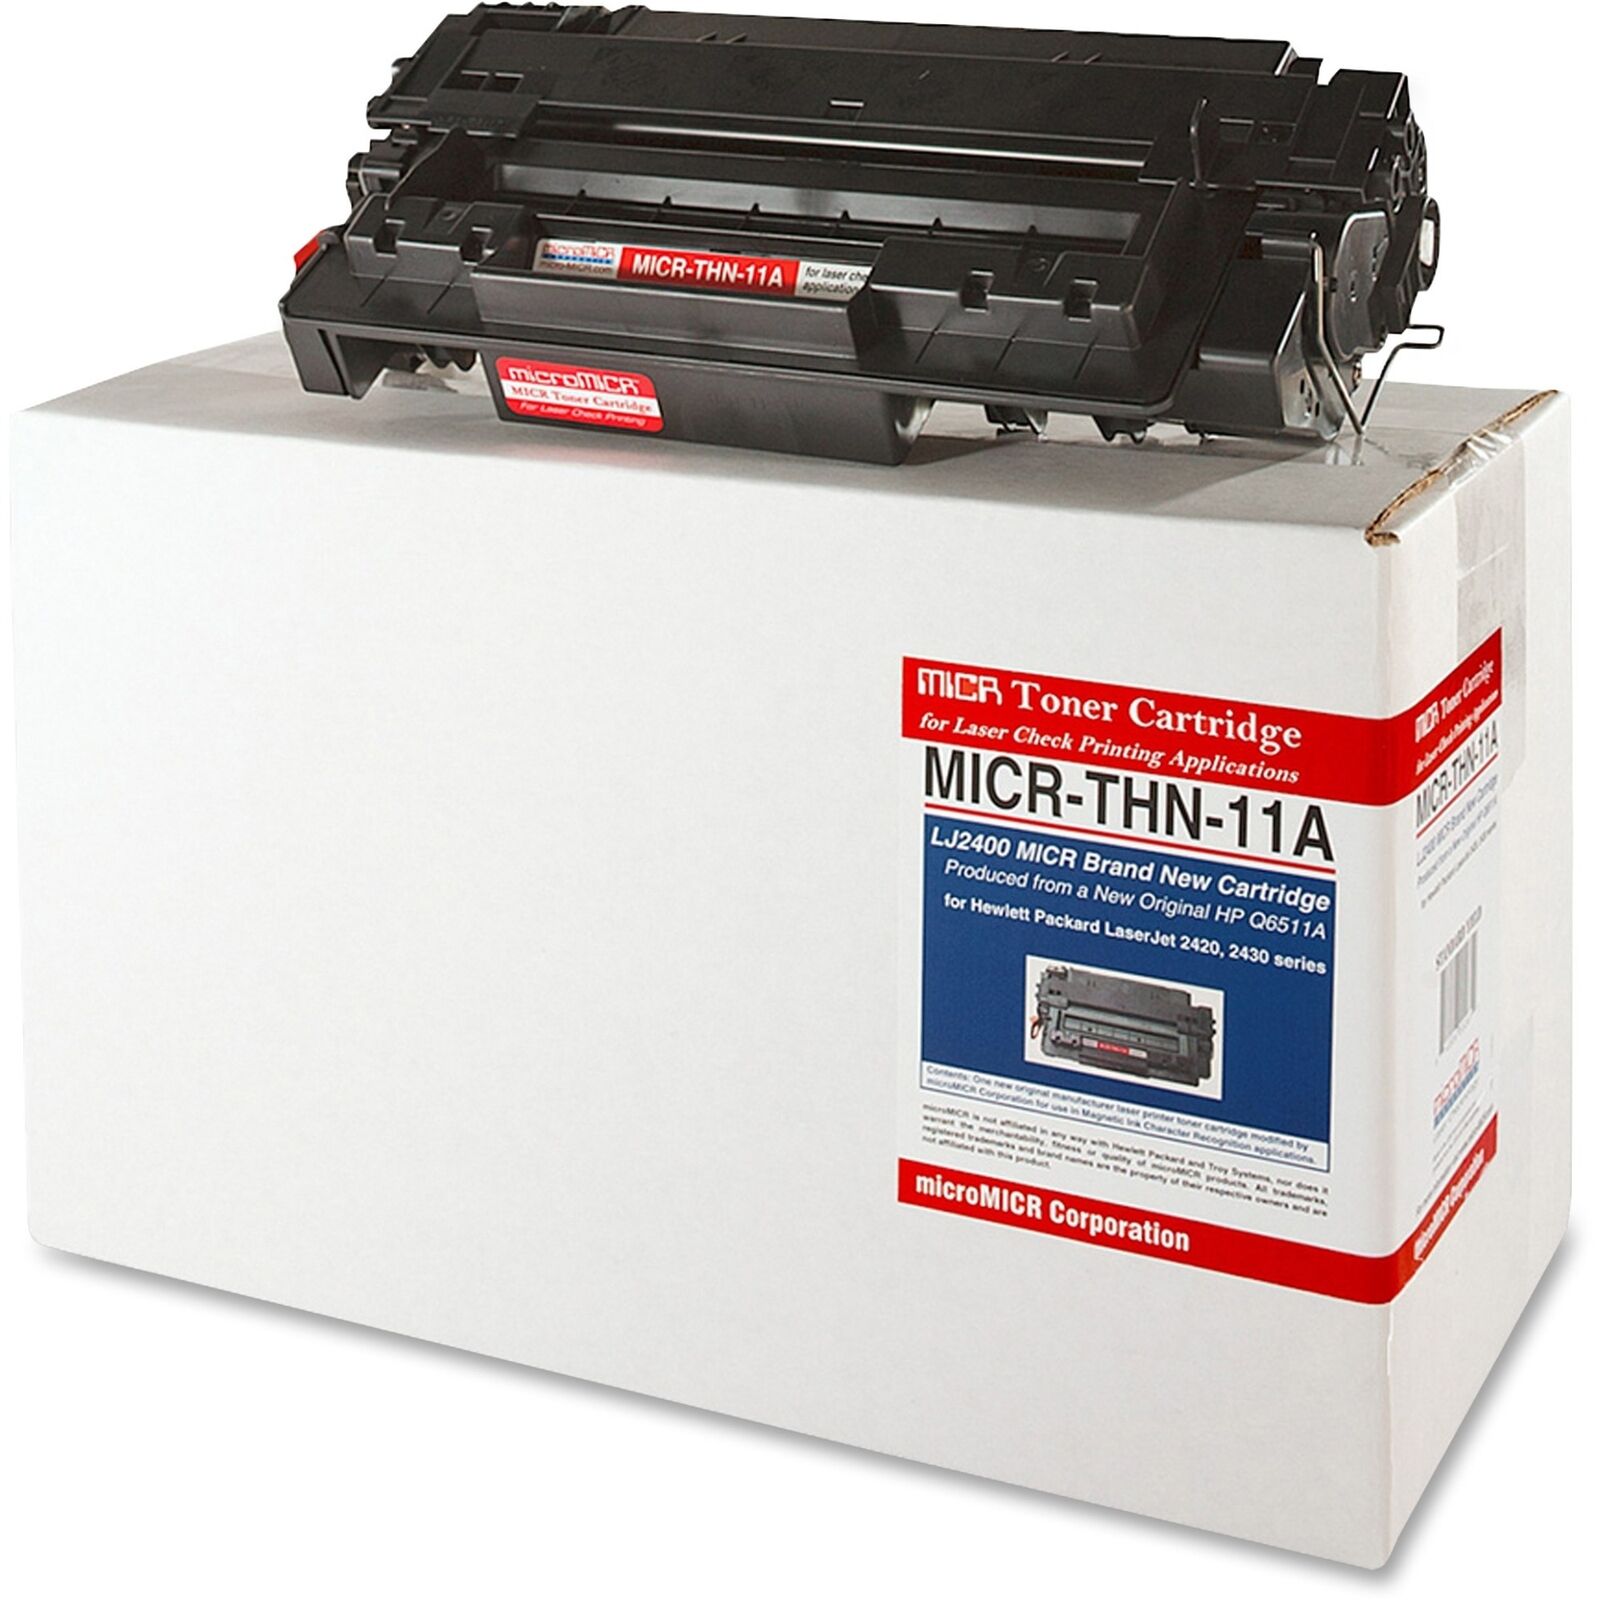 microMICR MICR Toner Cartridge - Alternative for HP (micrthn11a)